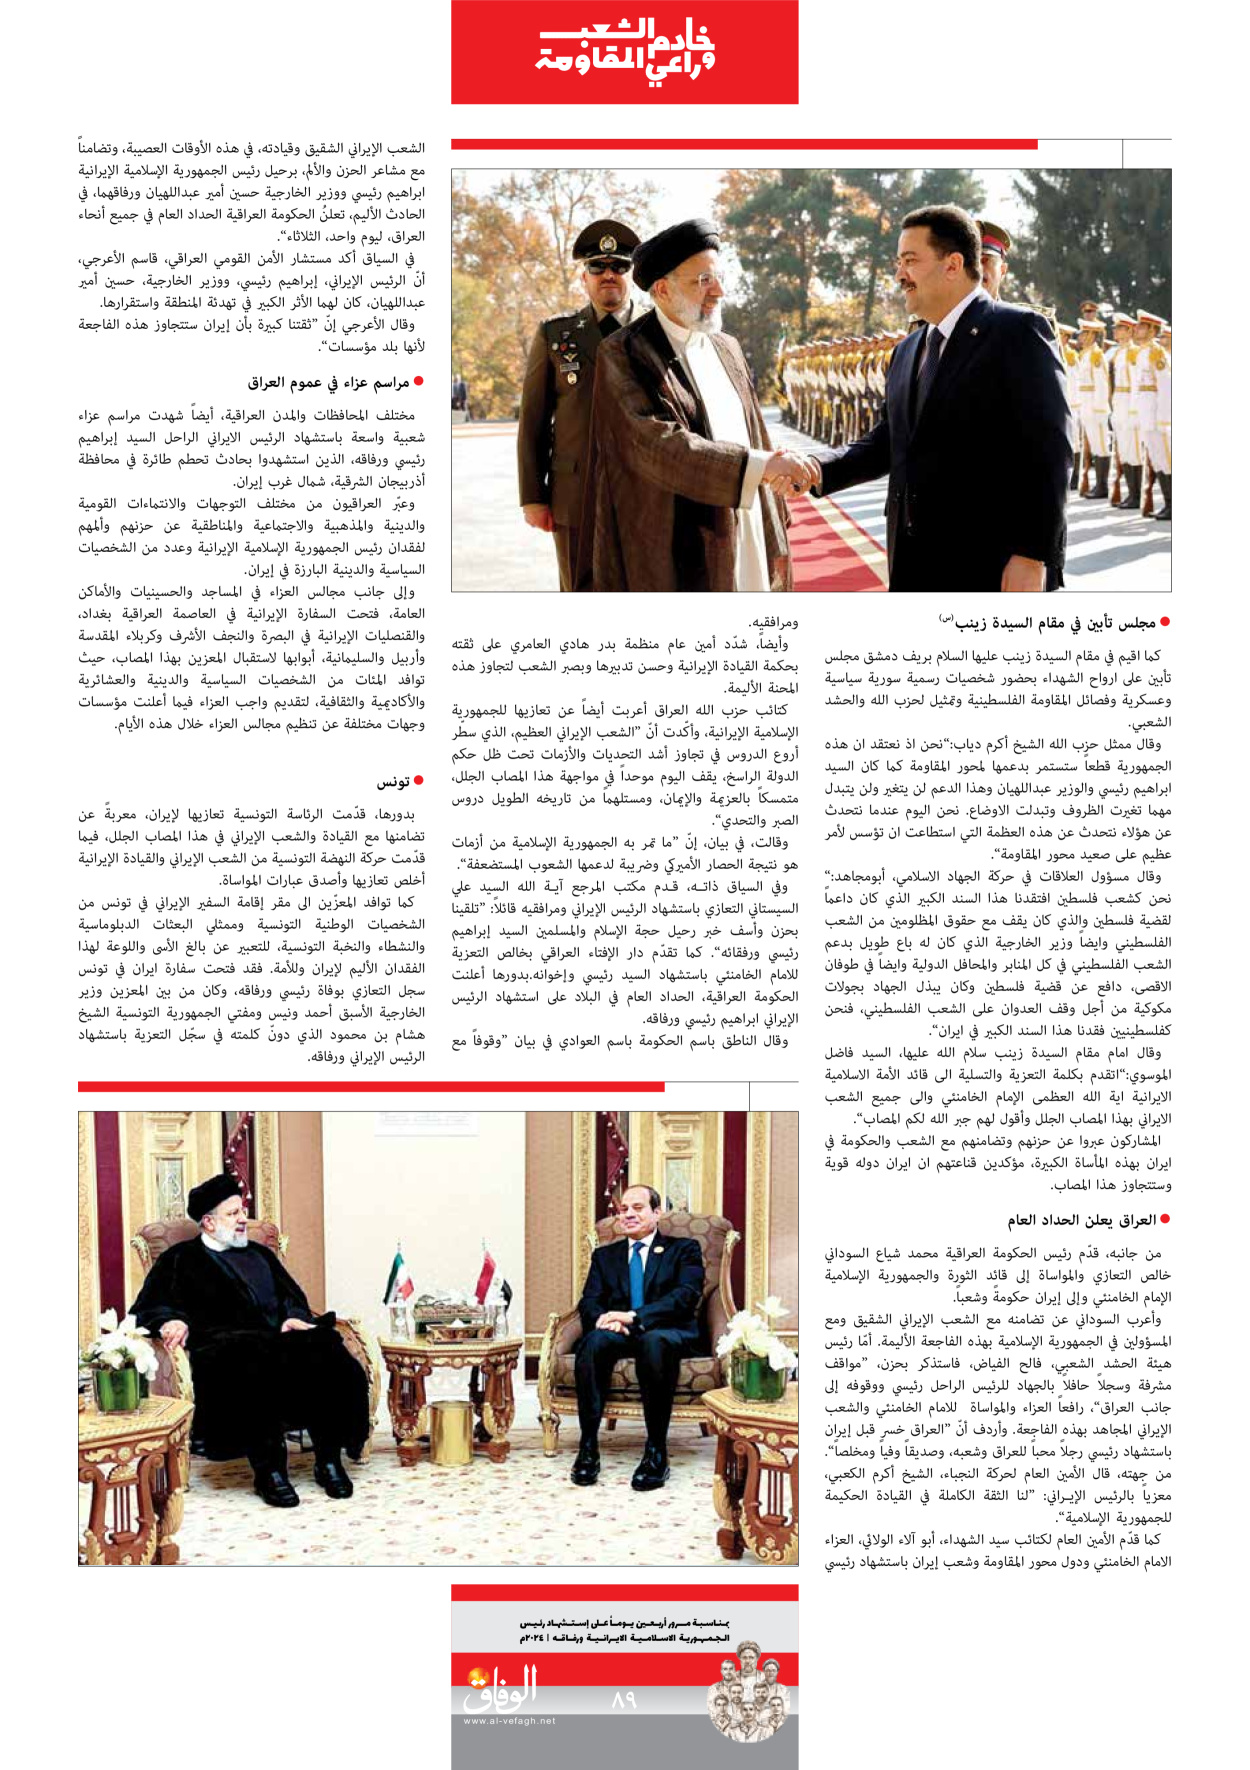 صحیفة ایران الدولیة الوفاق - ملحق ویژه نامه چهلم شهید رییسی - ٢٩ يونيو ٢٠٢٤ - الصفحة ۸۹